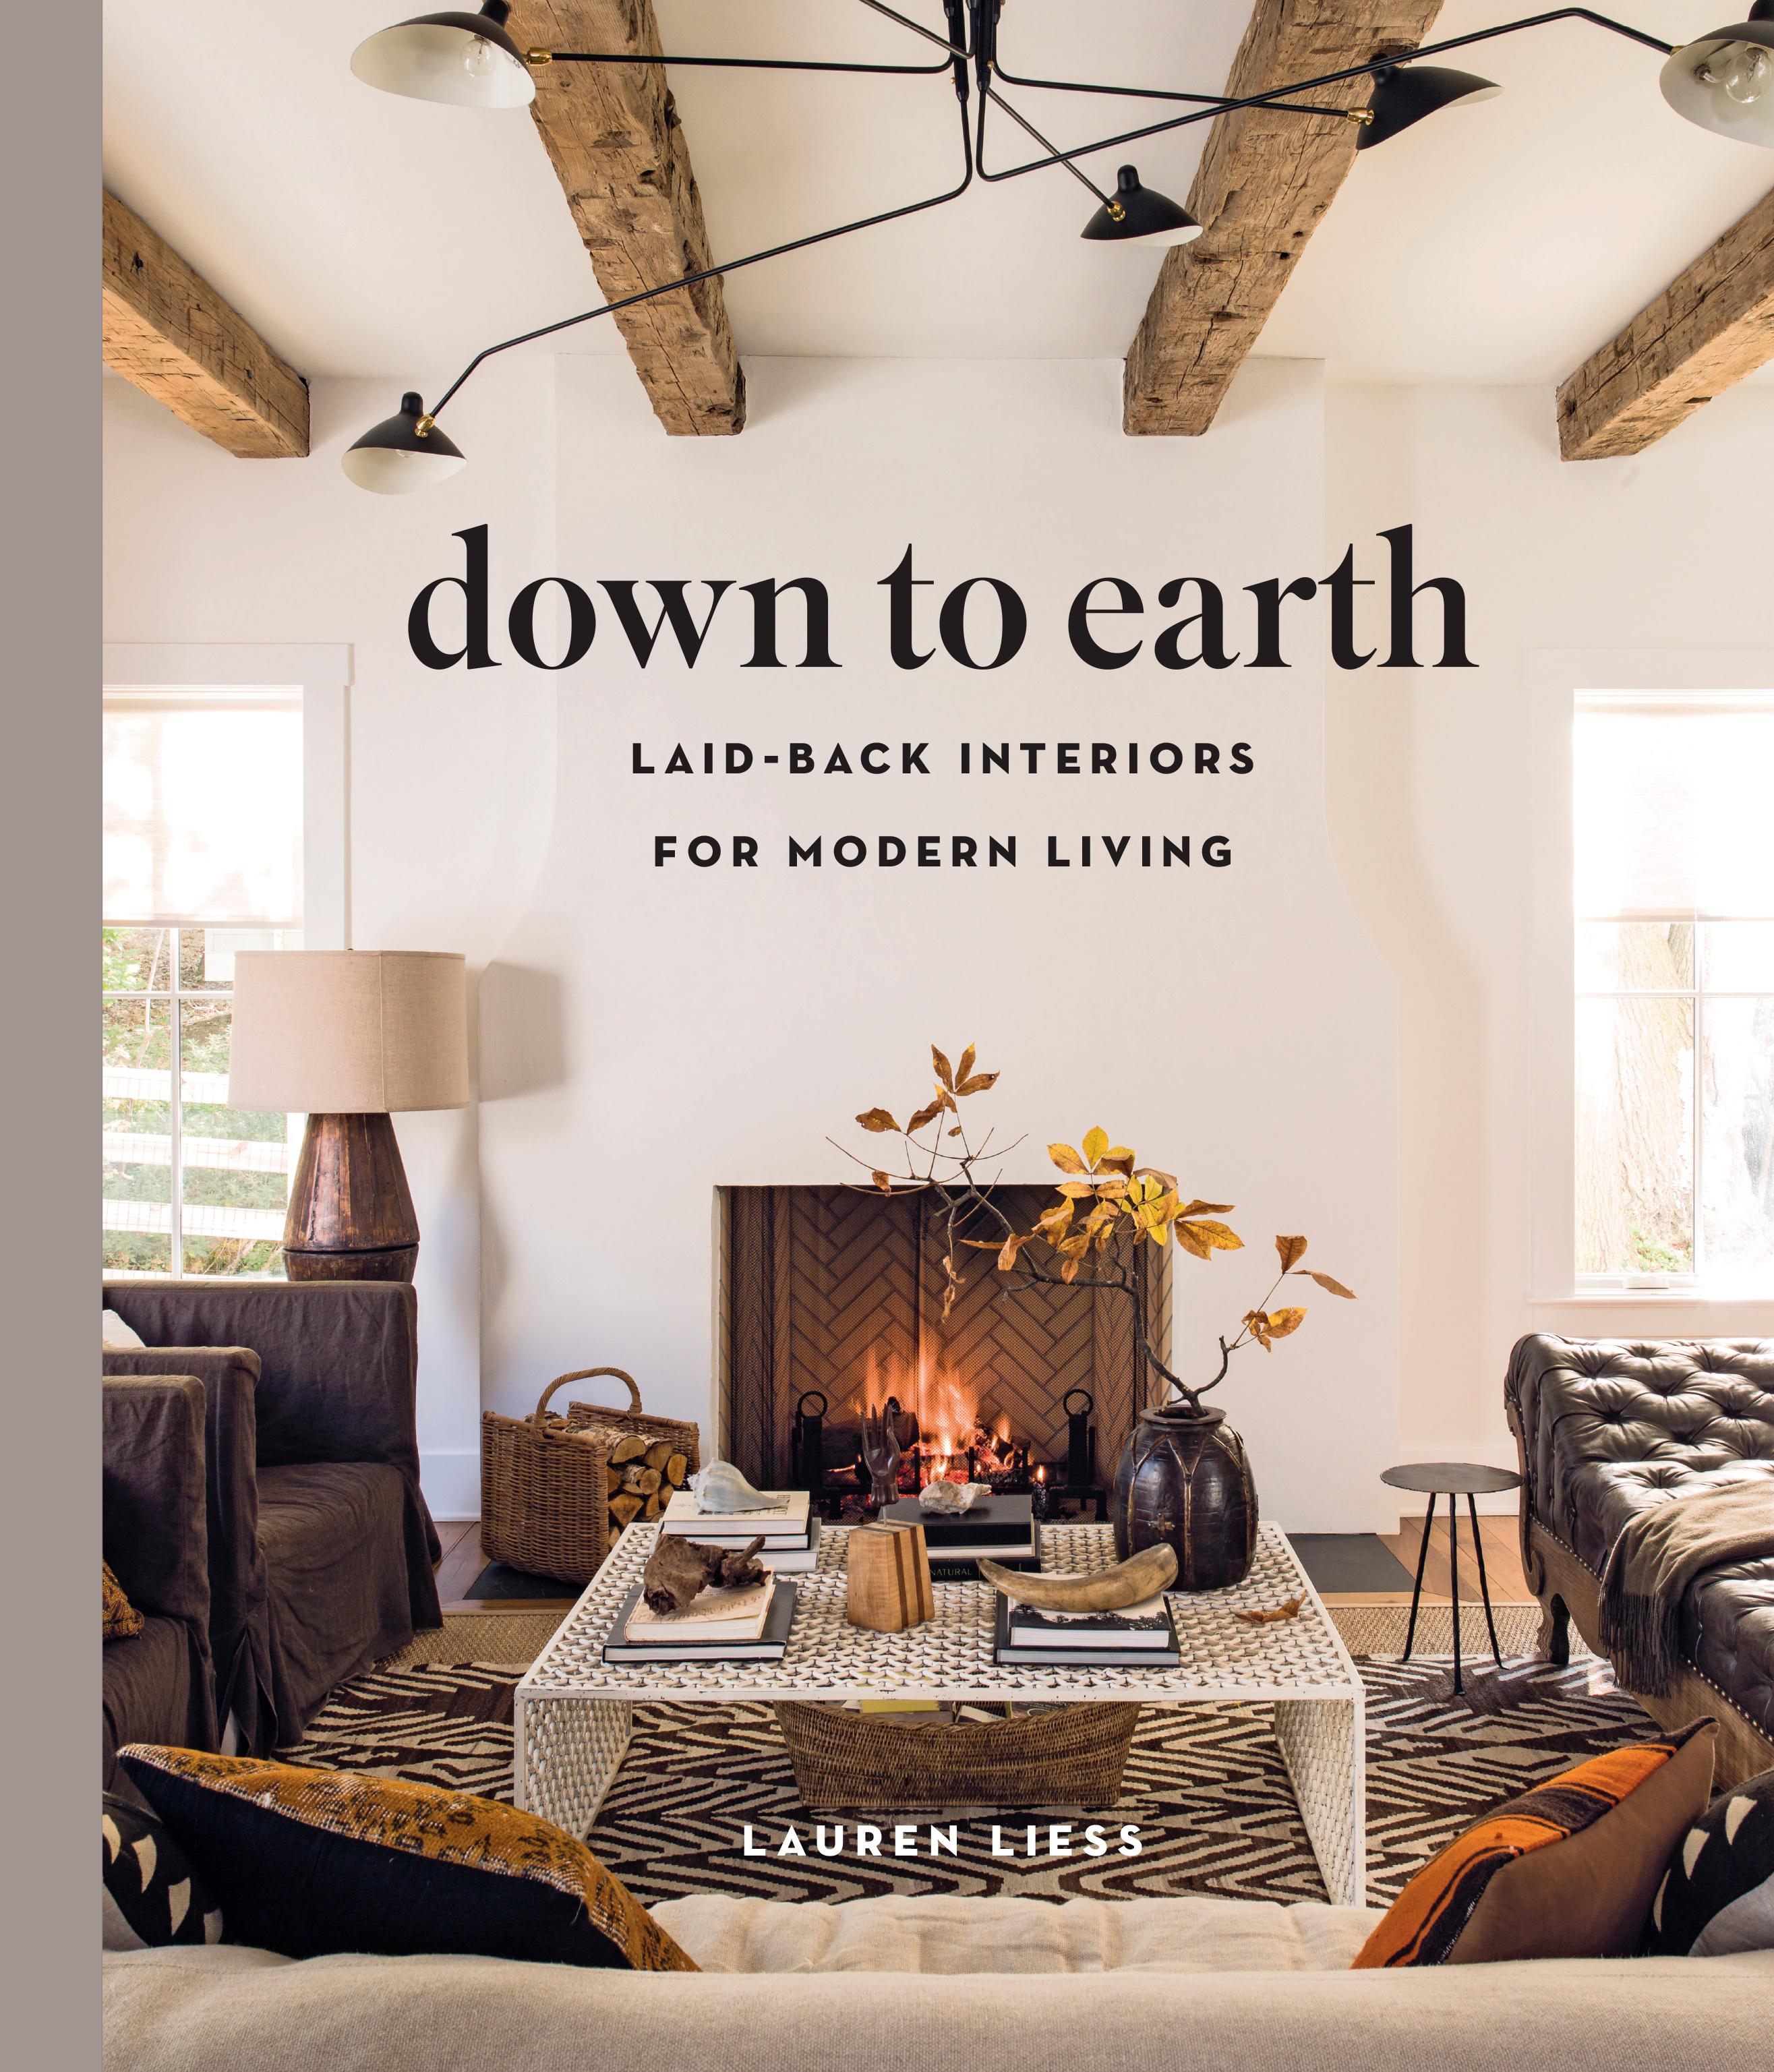 Down to Earth | Laid-back Interiors for Modern Living | Lauren Liess | Buch | Gebunden | Englisch | 2019 | Abrams & Chronicle Books | EAN 9781419738197 - Liess, Lauren